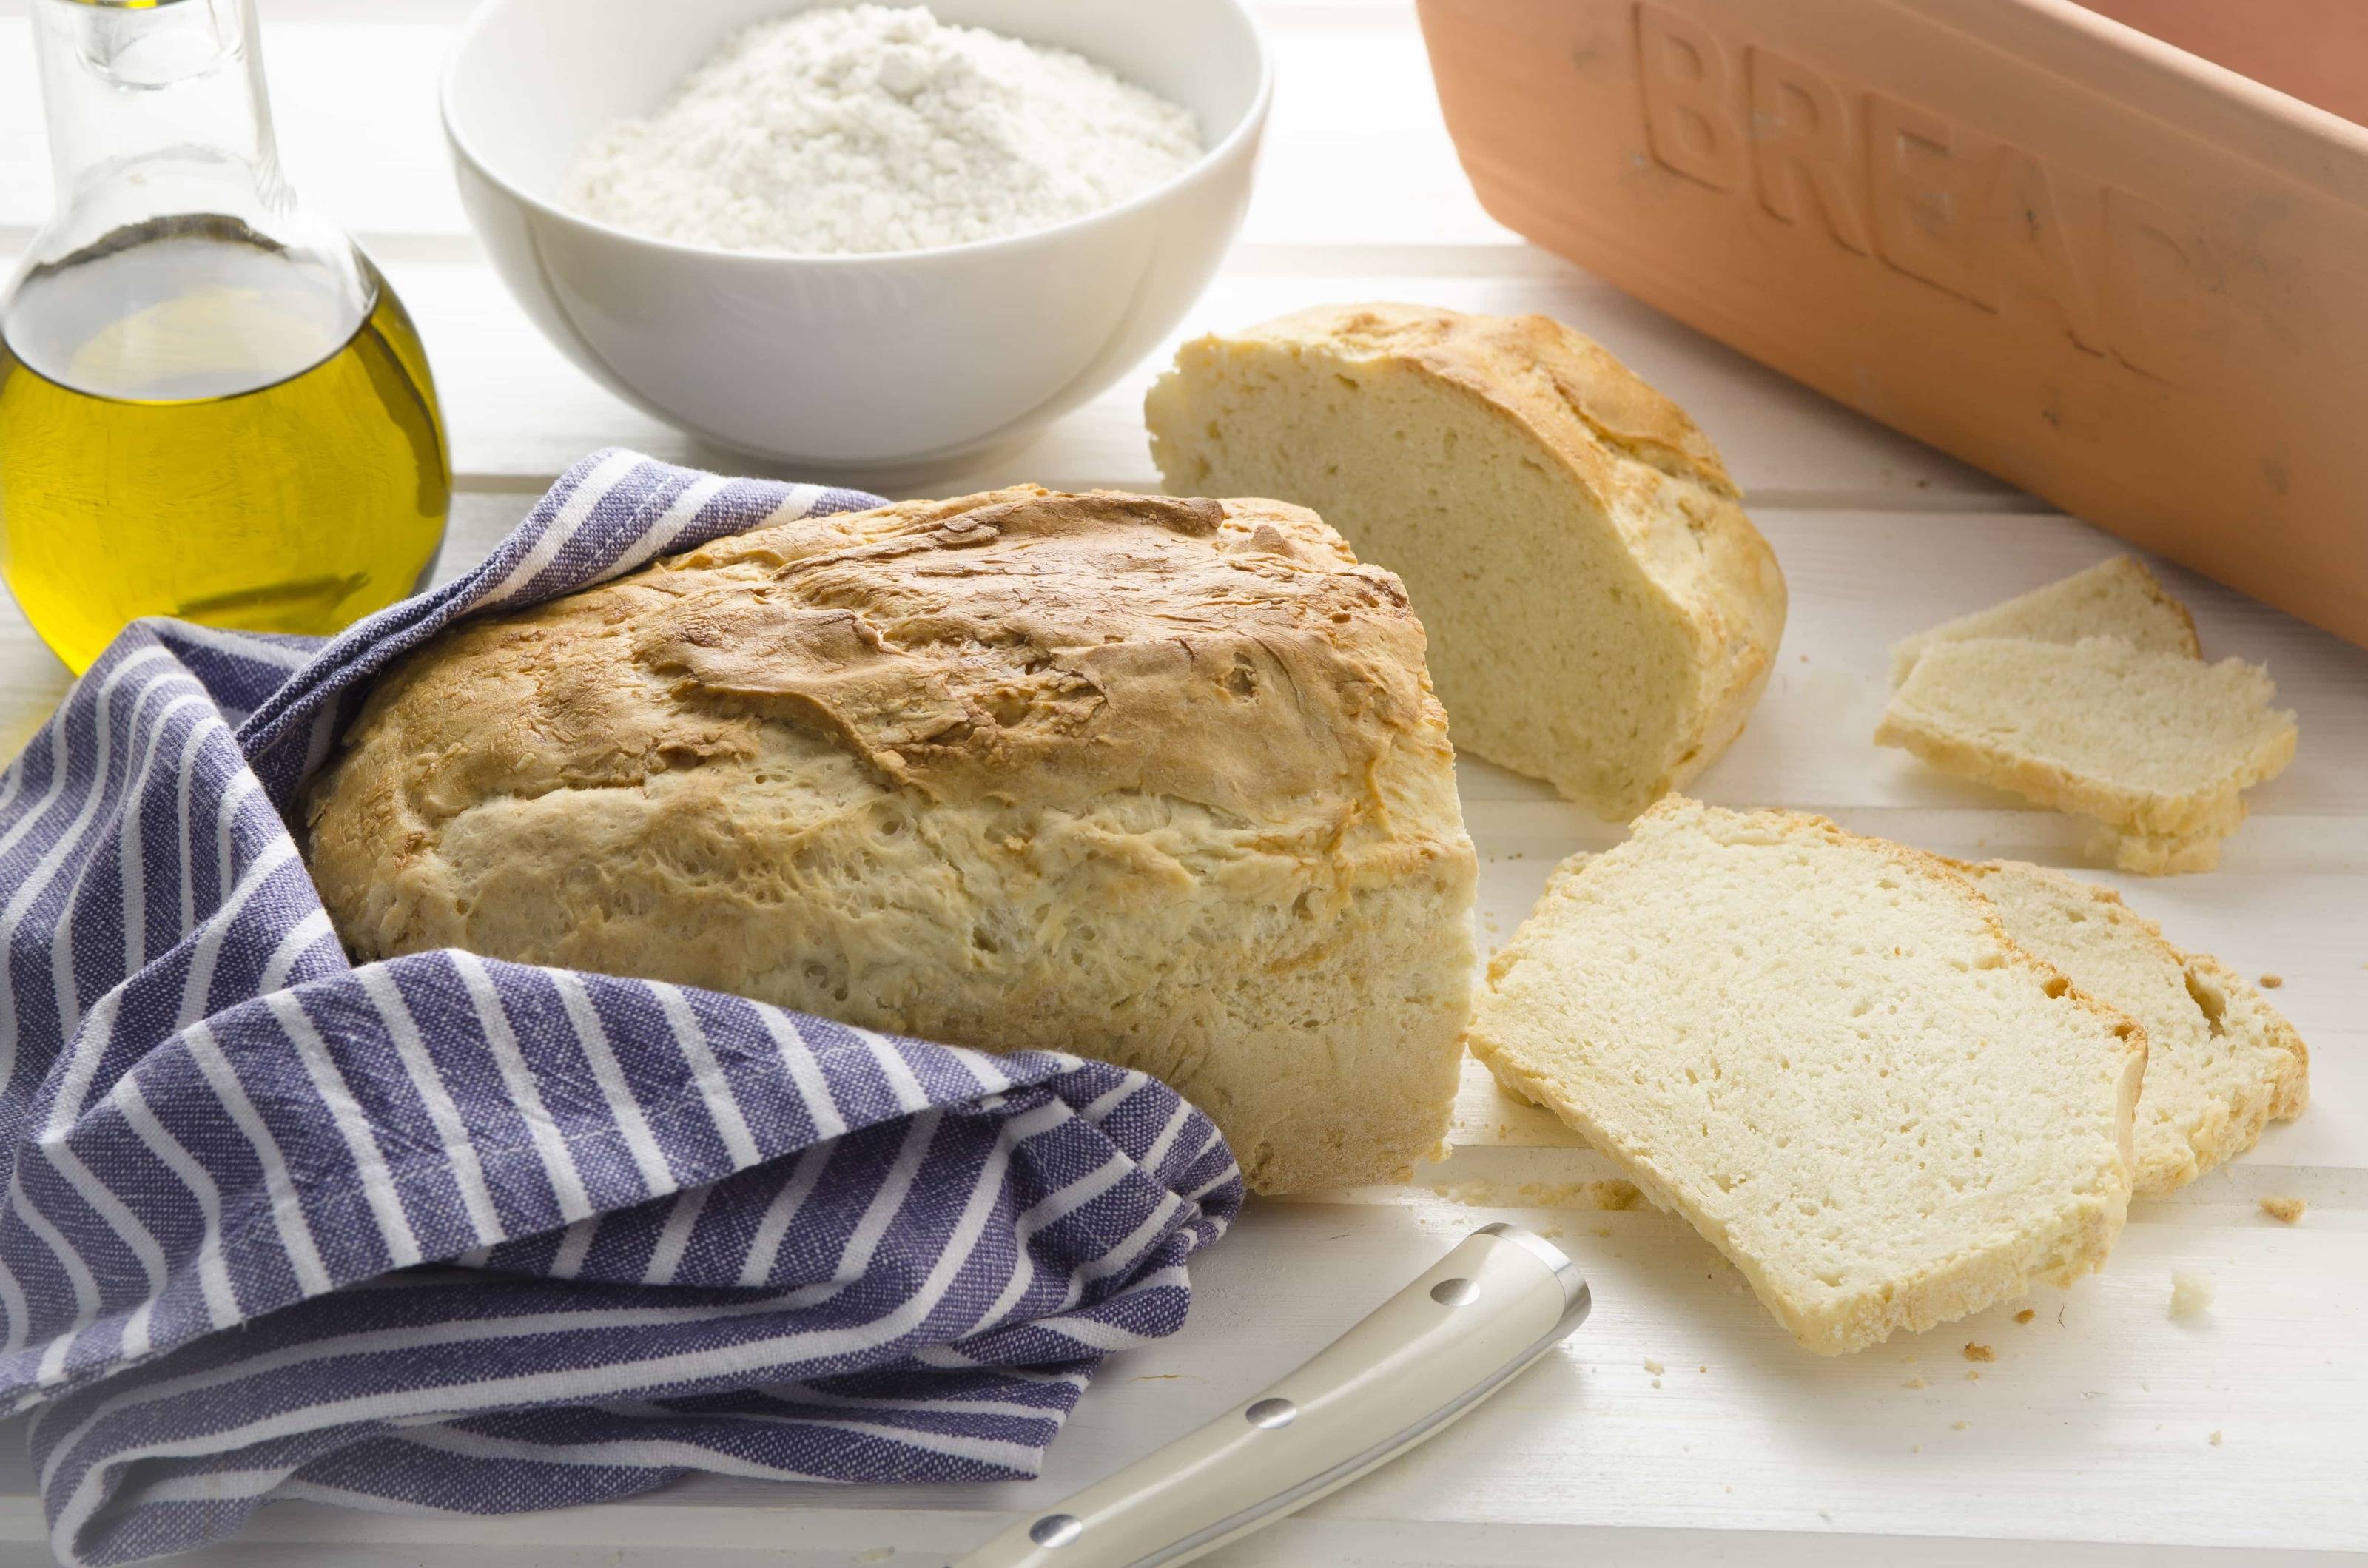 Ihre Tipps für die Aufbewahrung von Brot?